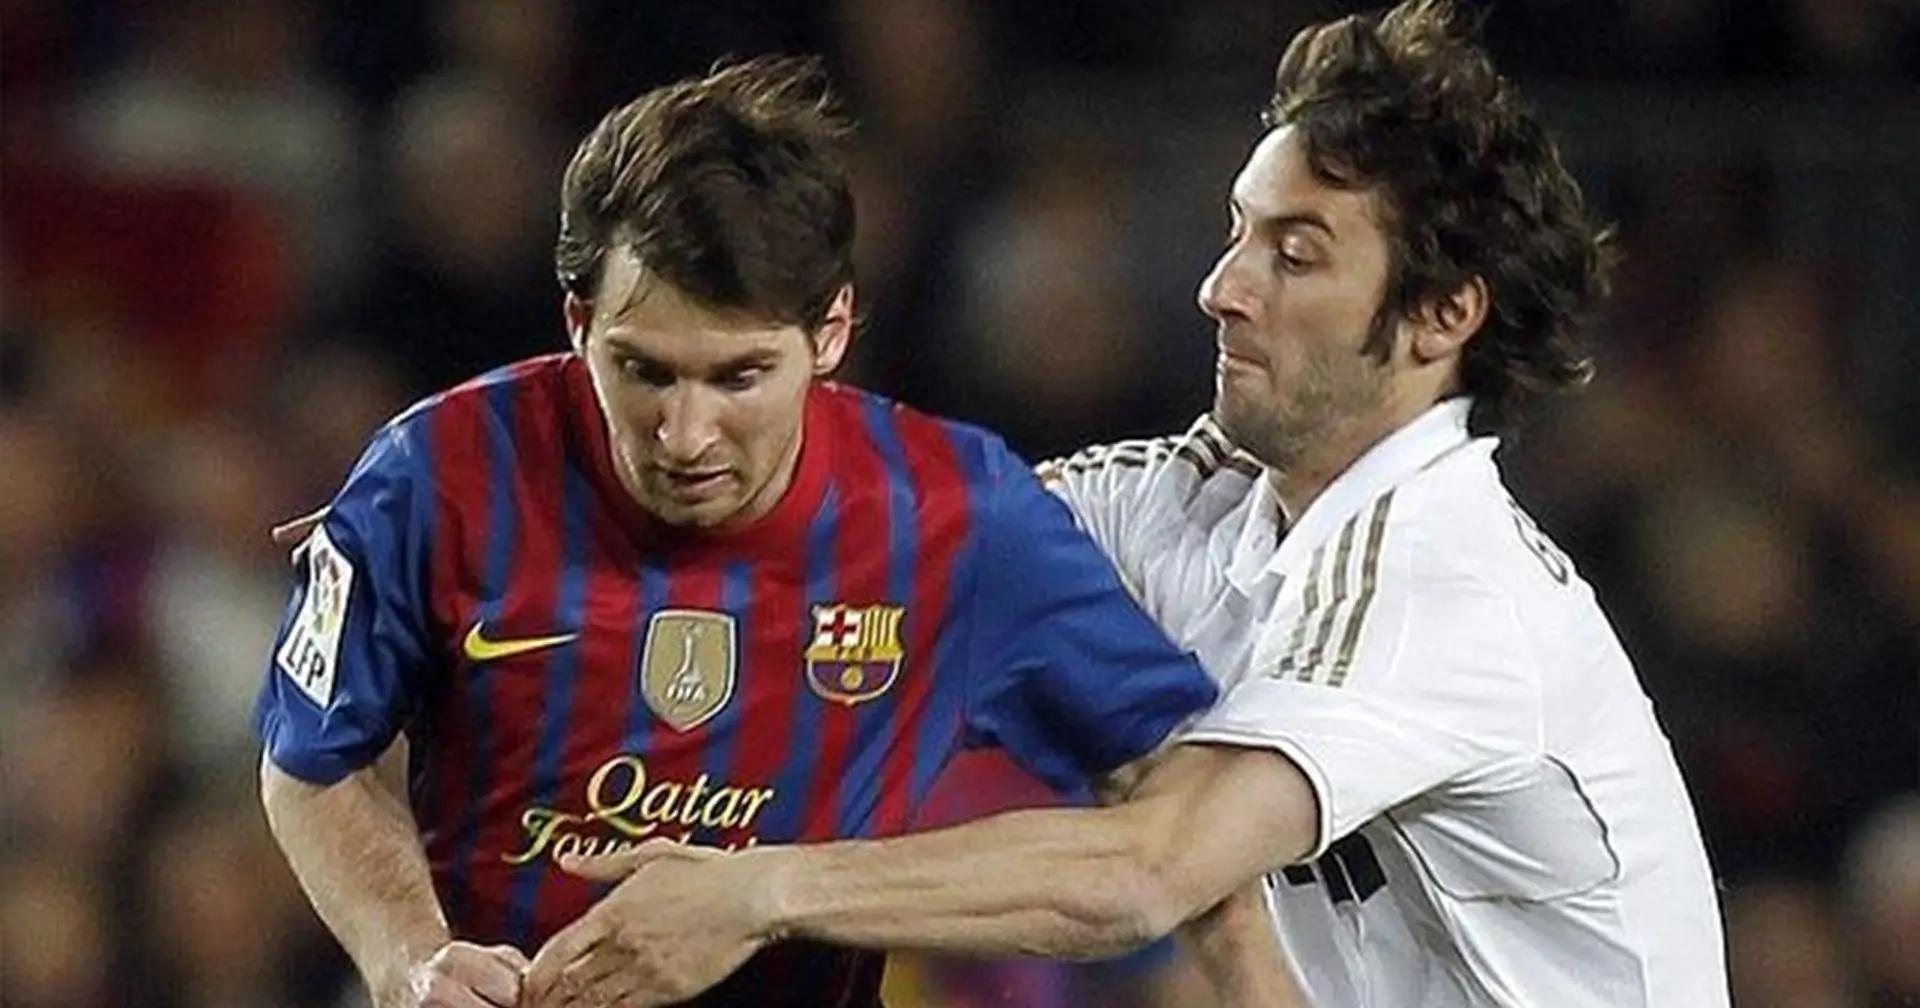 La divertida anécdota sobre cómo Granero conoció a Messi